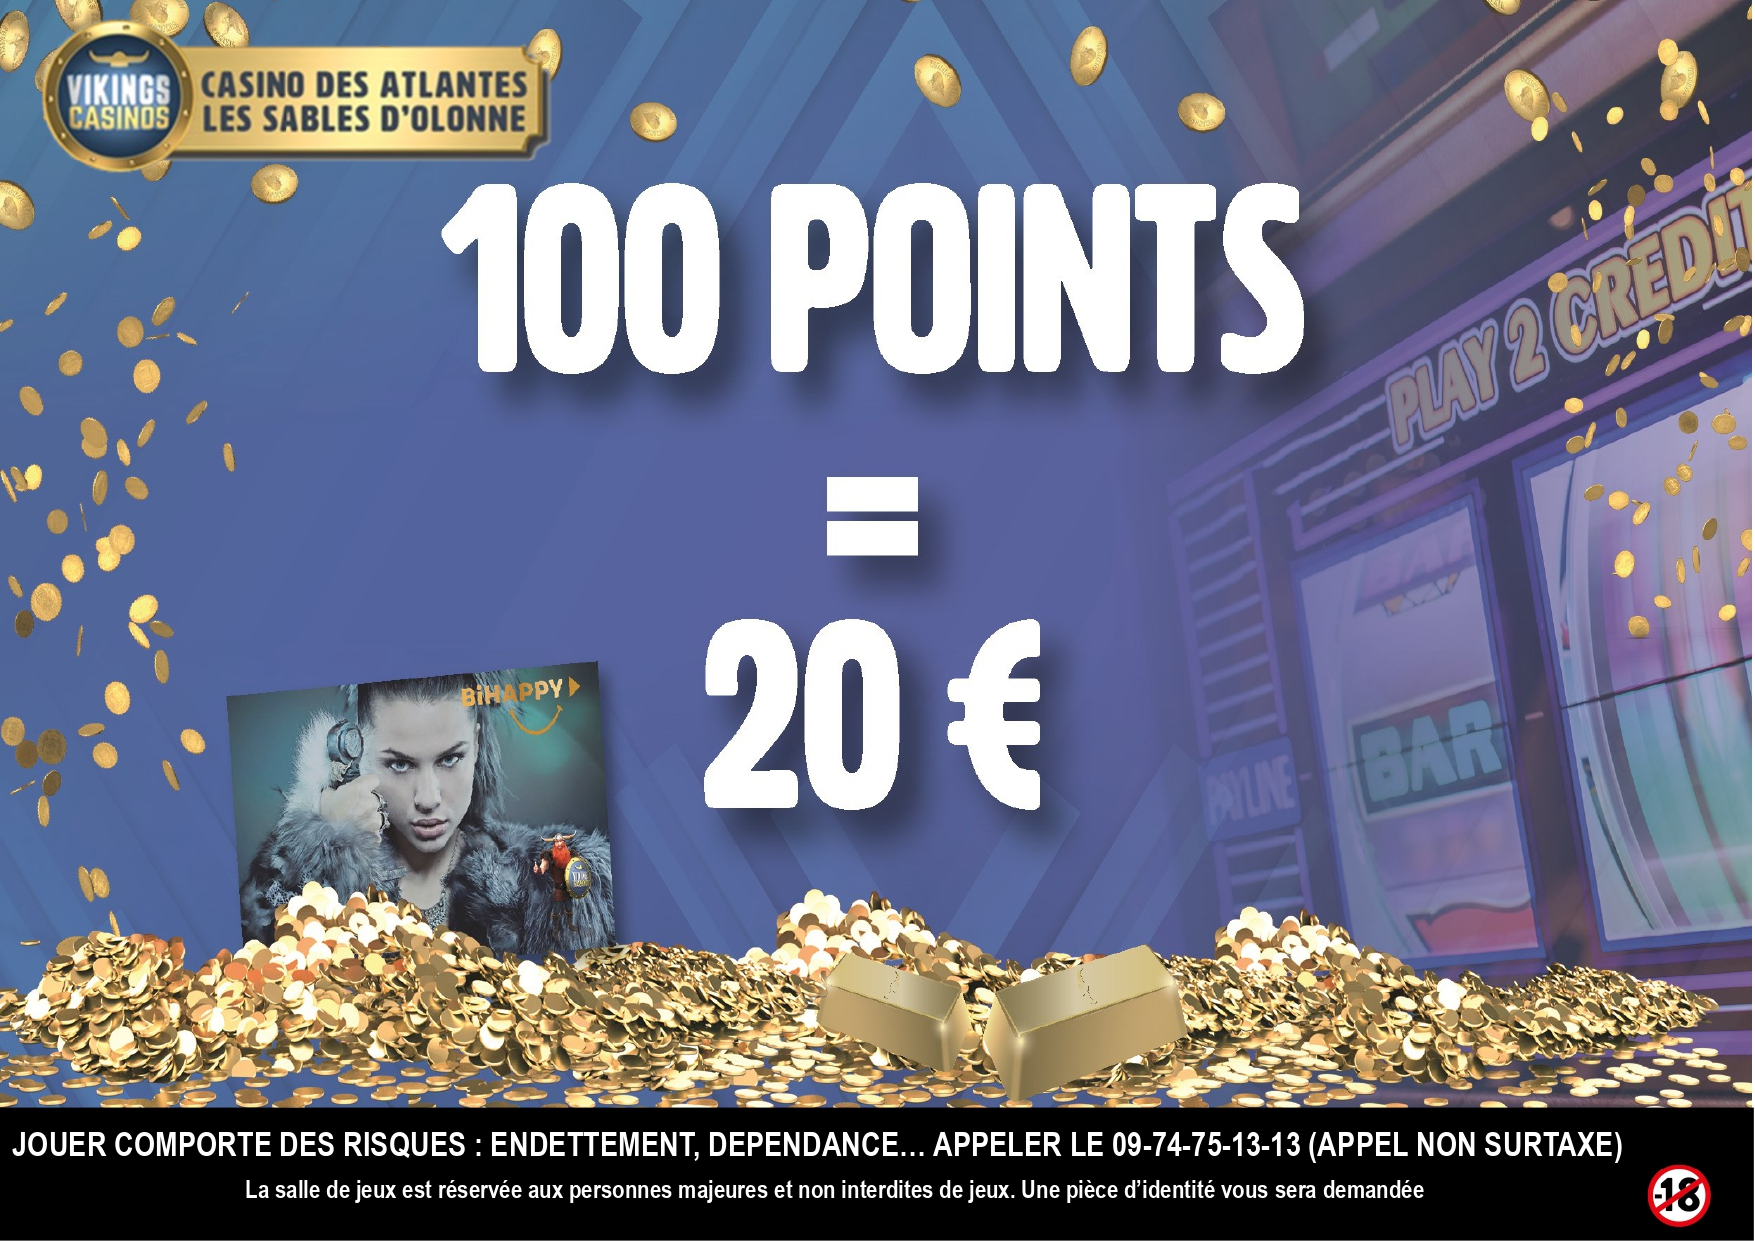 20€ Offerts en Ticket de jeu si vous collectez seulement 100 points (au lieu de 2000 points)